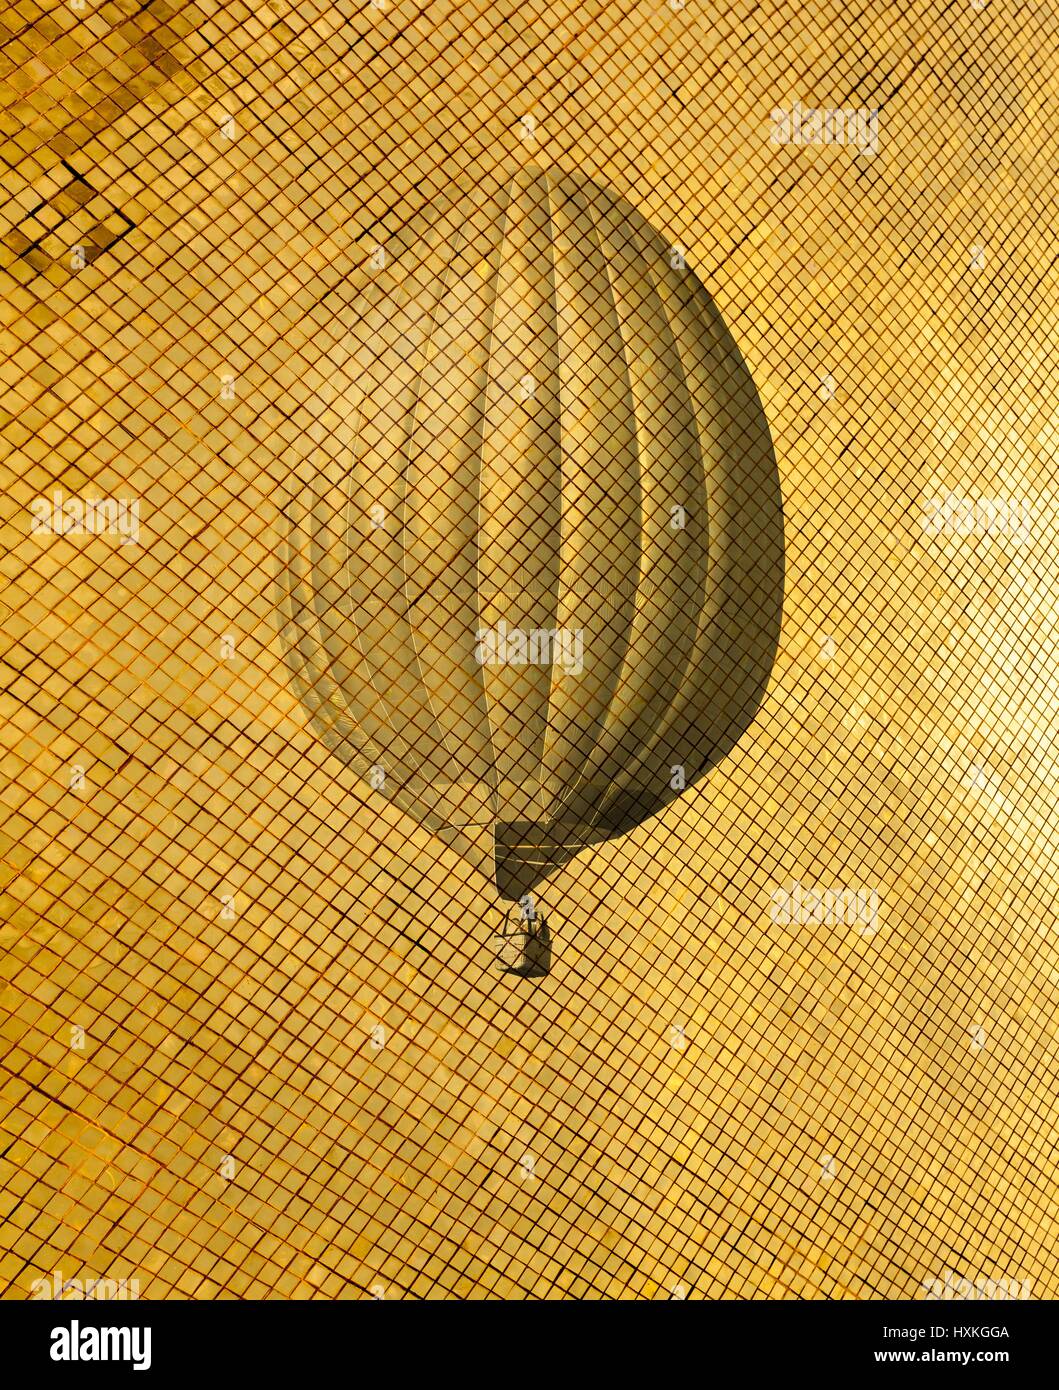 Retro style air balloon Stock Photo